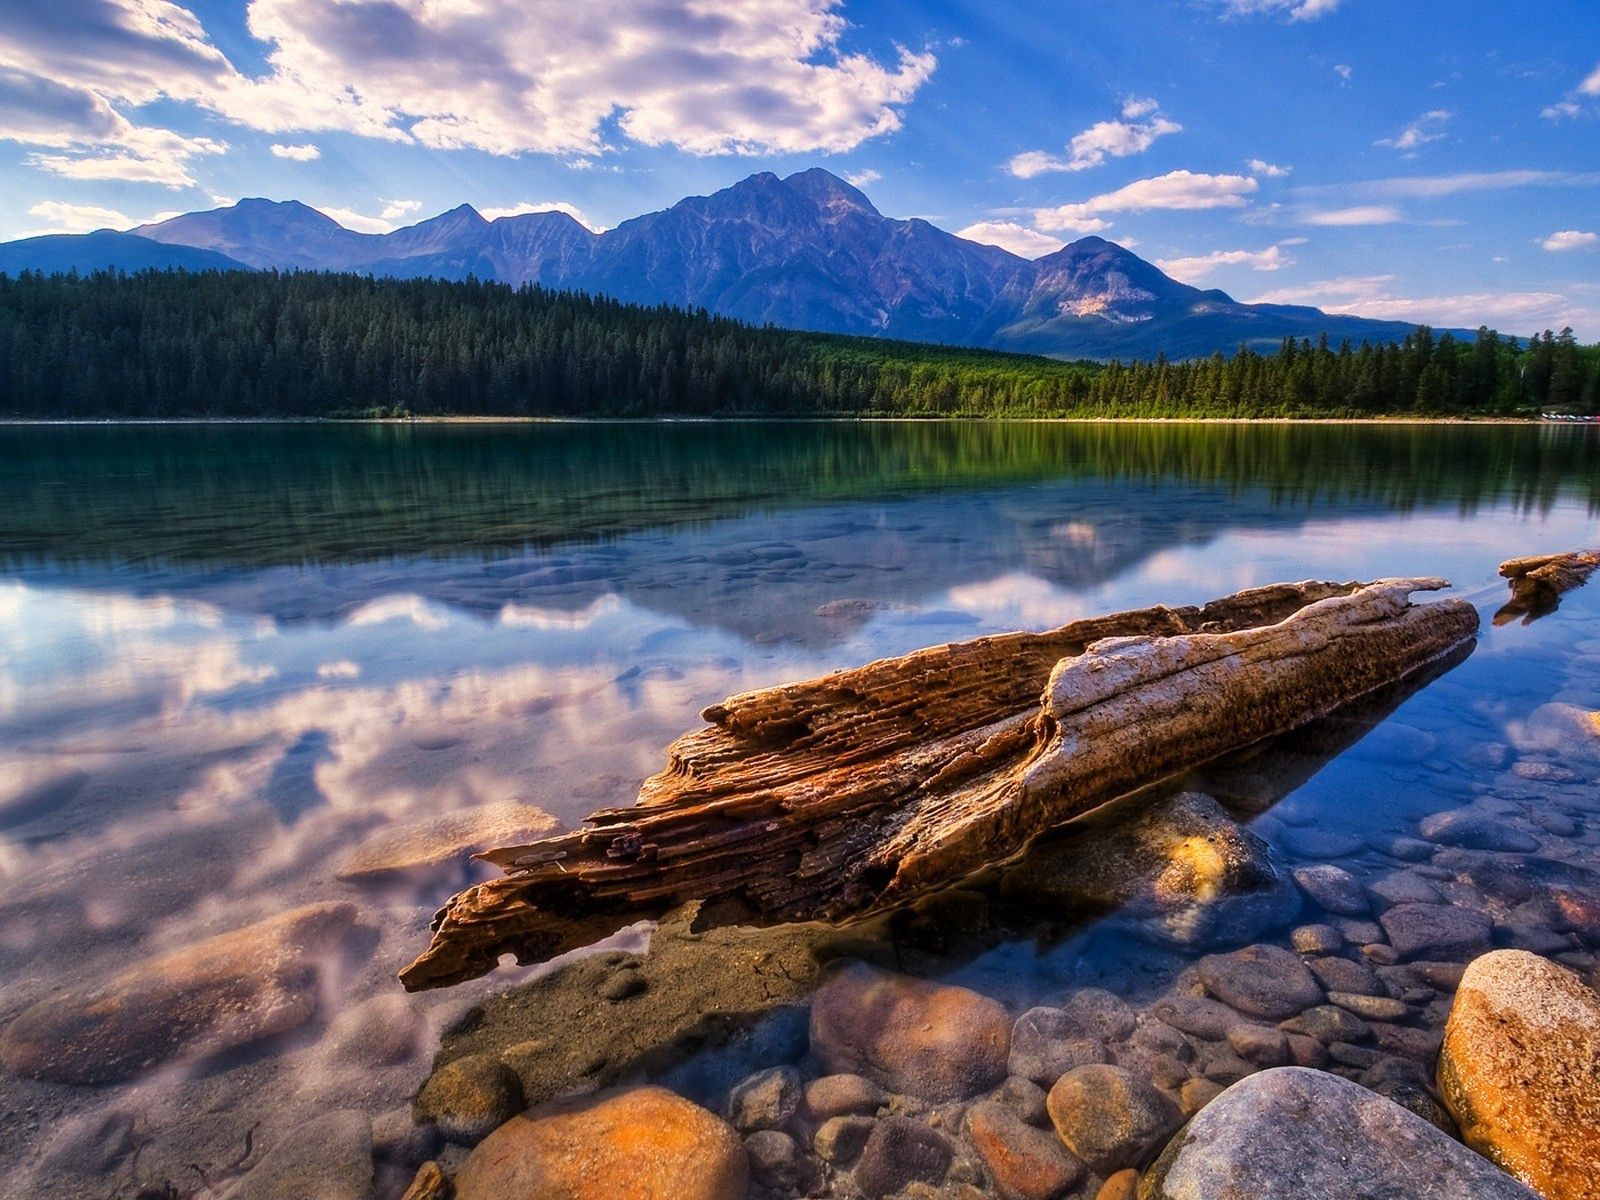 water surface, nature, lake, reflection, wood, tree, wreckage, detritus, trunk